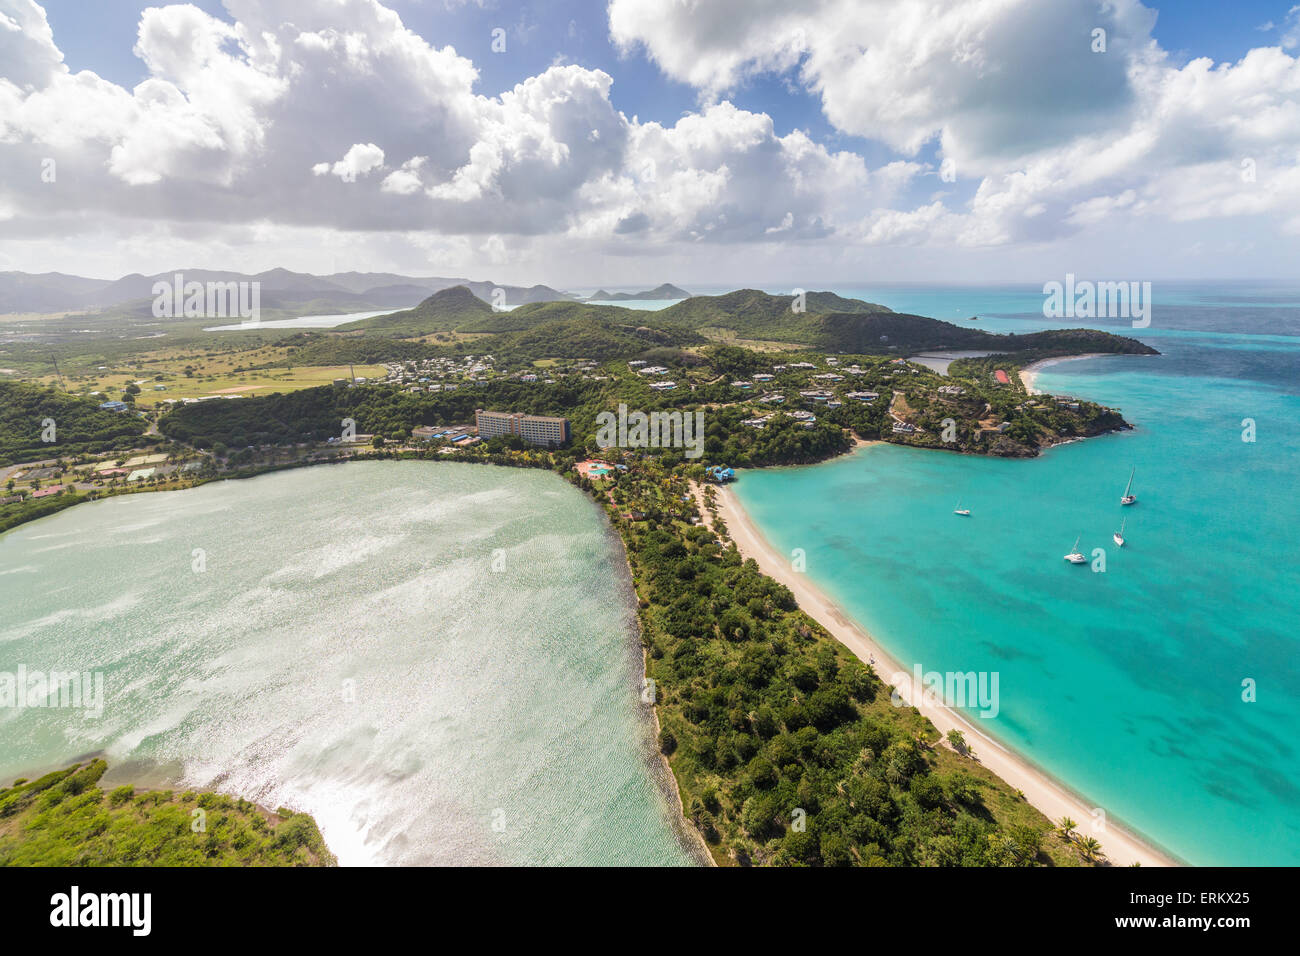 Vue aérienne d'un lagon sur l'île des Caraïbes d'Antigua une fine ligne de sable divise un petit bassin de sel de la mer, à Antigua Banque D'Images